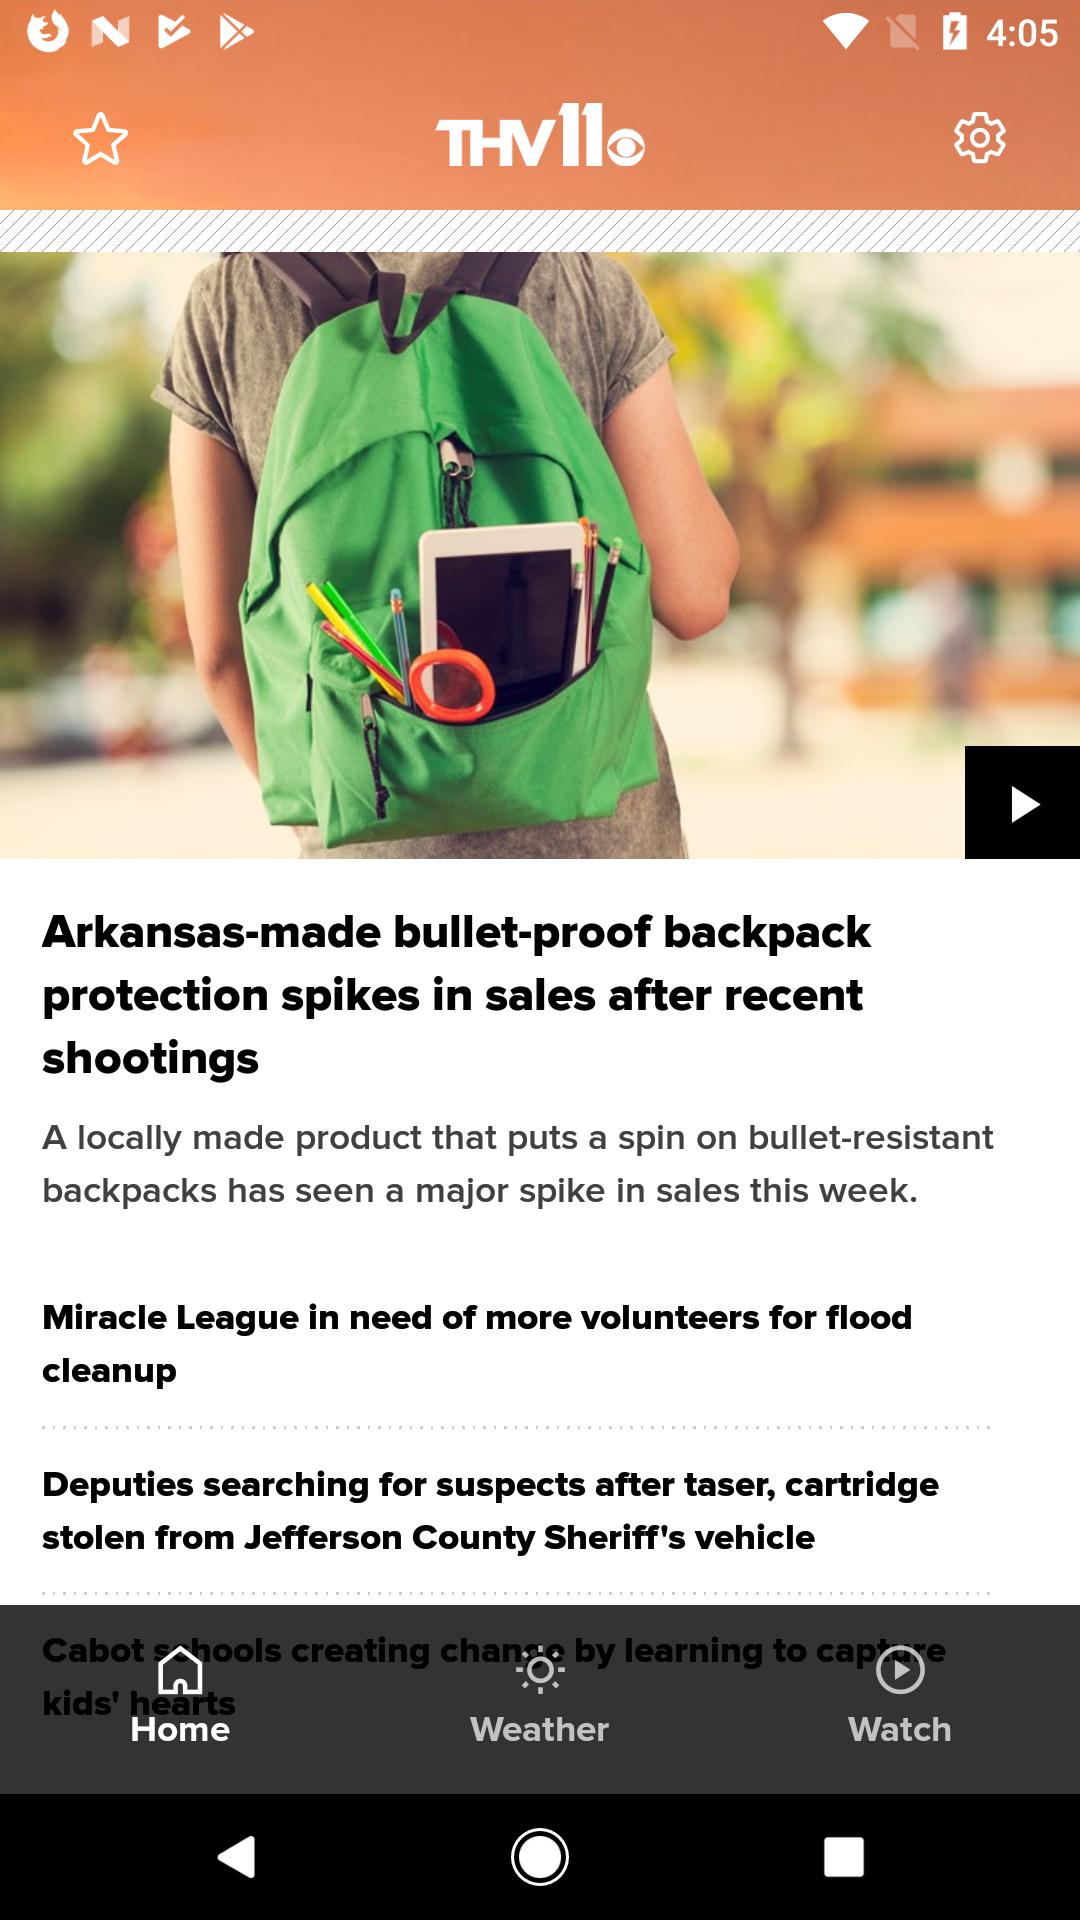 Arkansas News from THV11 43.2.41 Screenshot 1